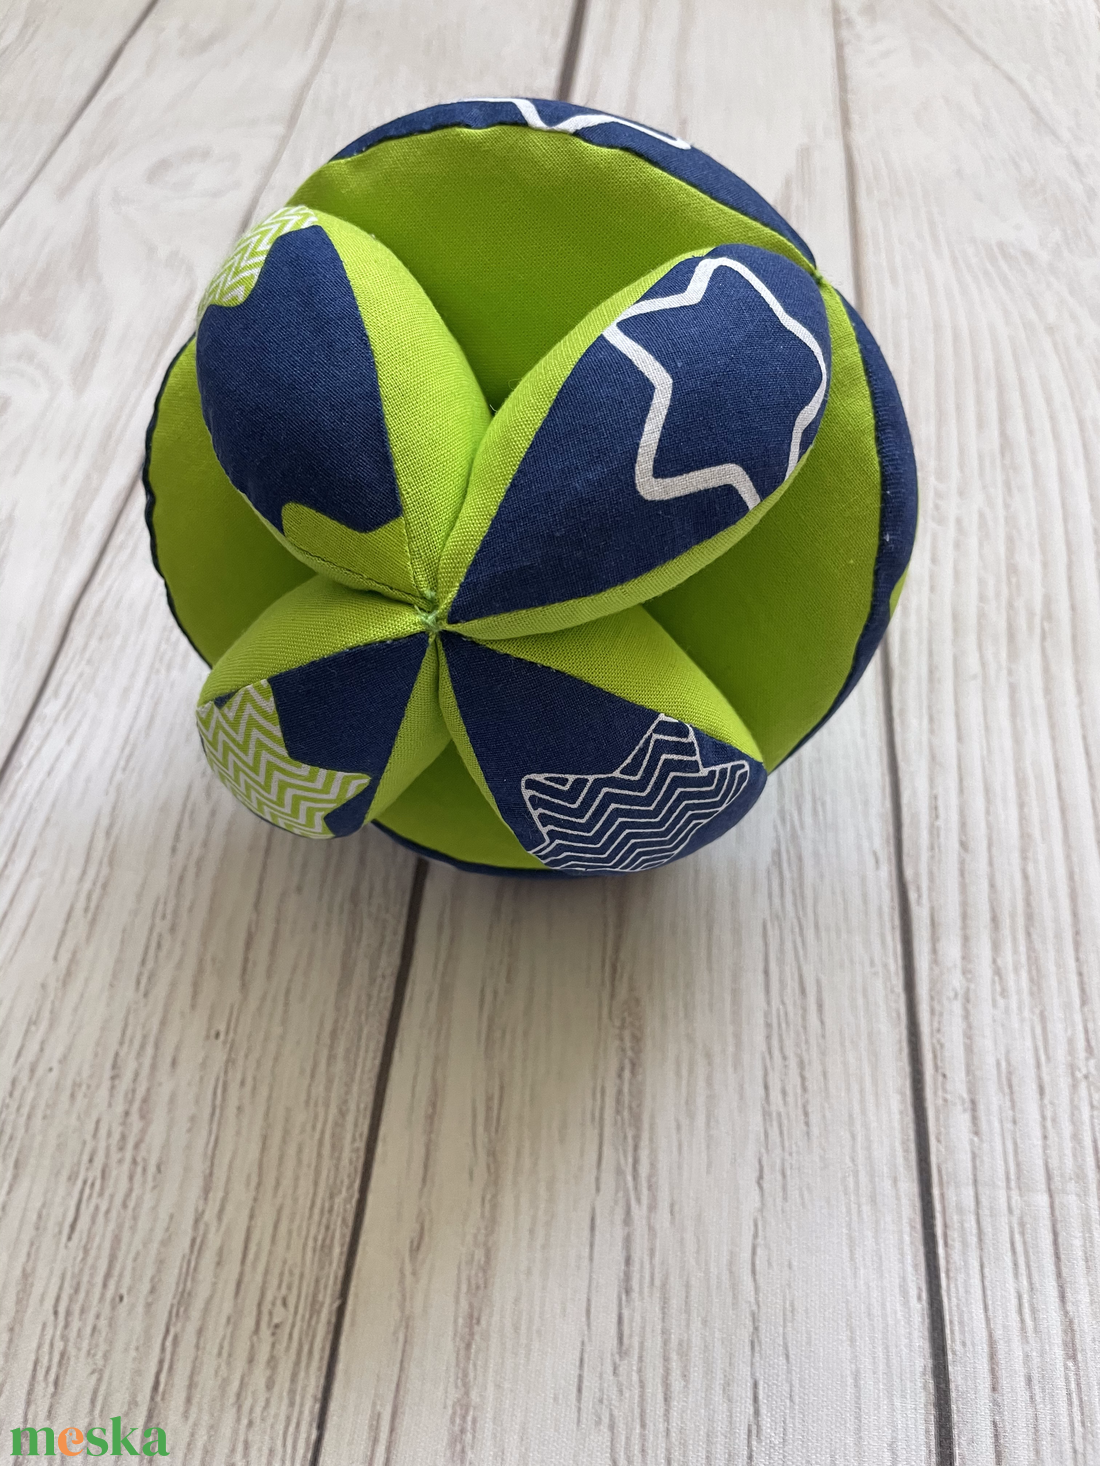 AKCIÓ - Montessori szétszedhető labda - játék & sport - babalátogató ajándékcsomag - Meska.hu